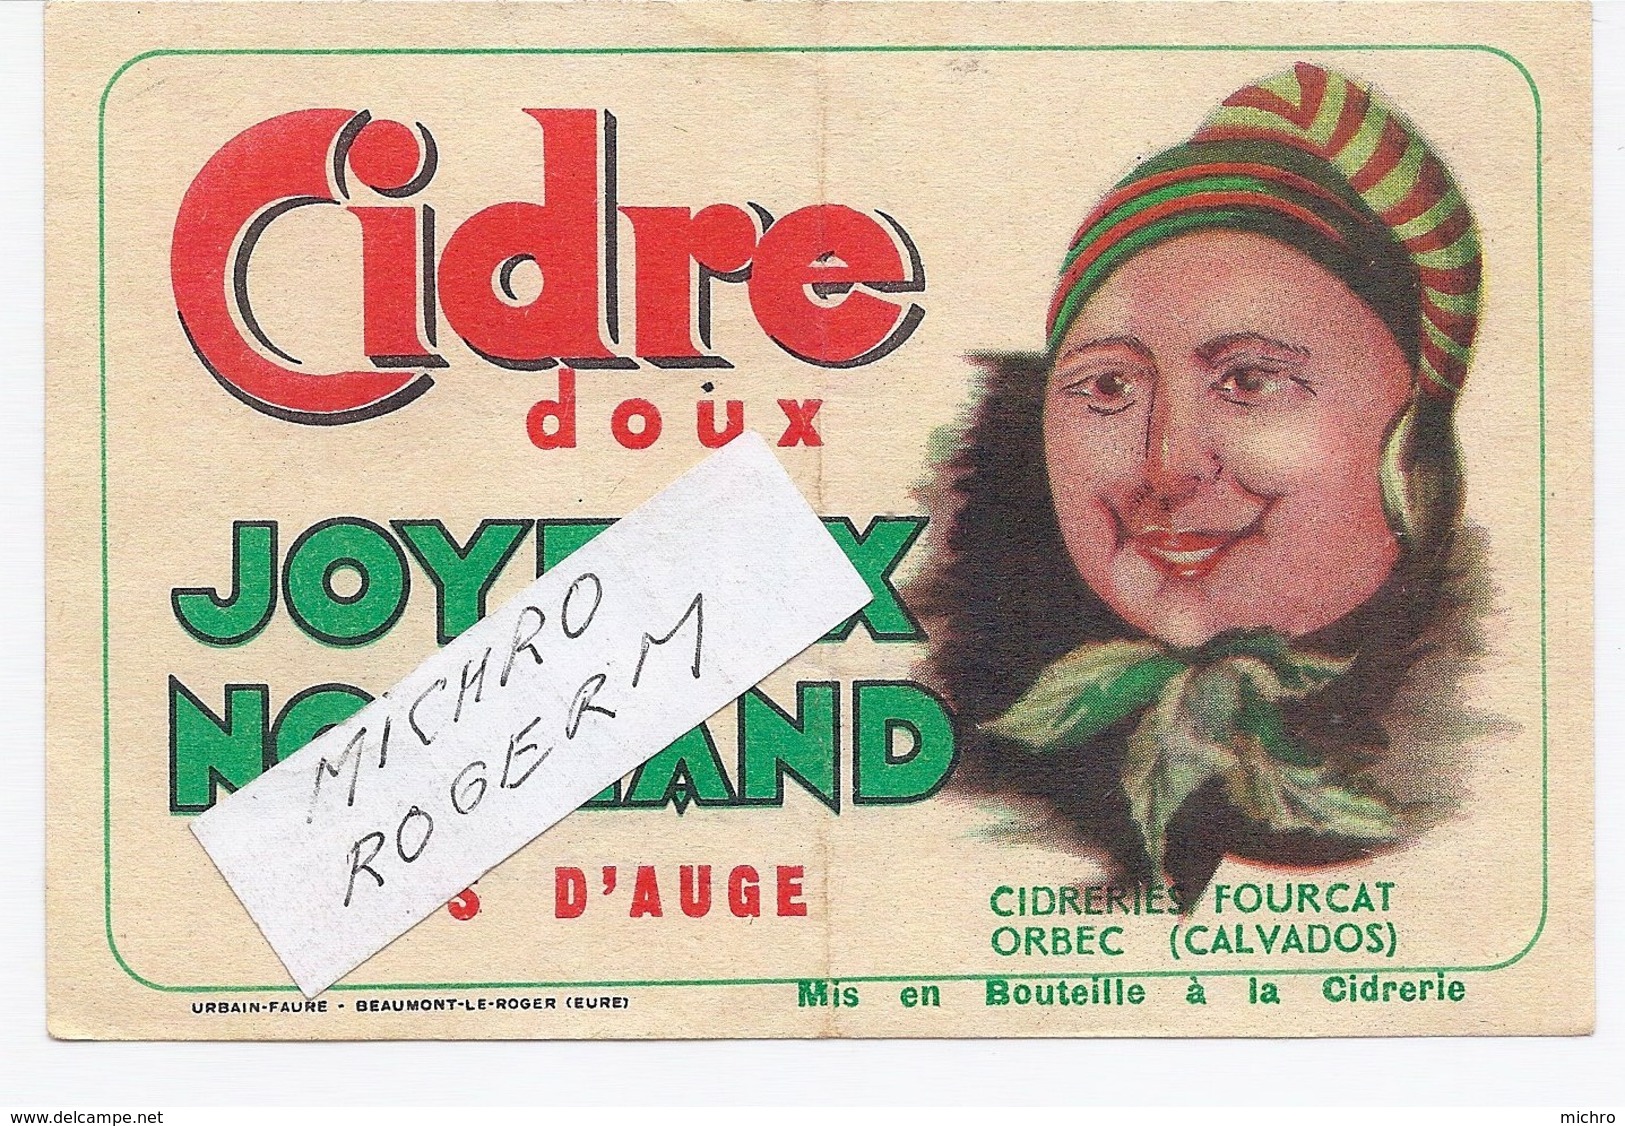 ORBEC 14 - Cidrerie FOURCAT - Etiquette Du CIDRE "joyeux Normand" - 551119 - Publicités